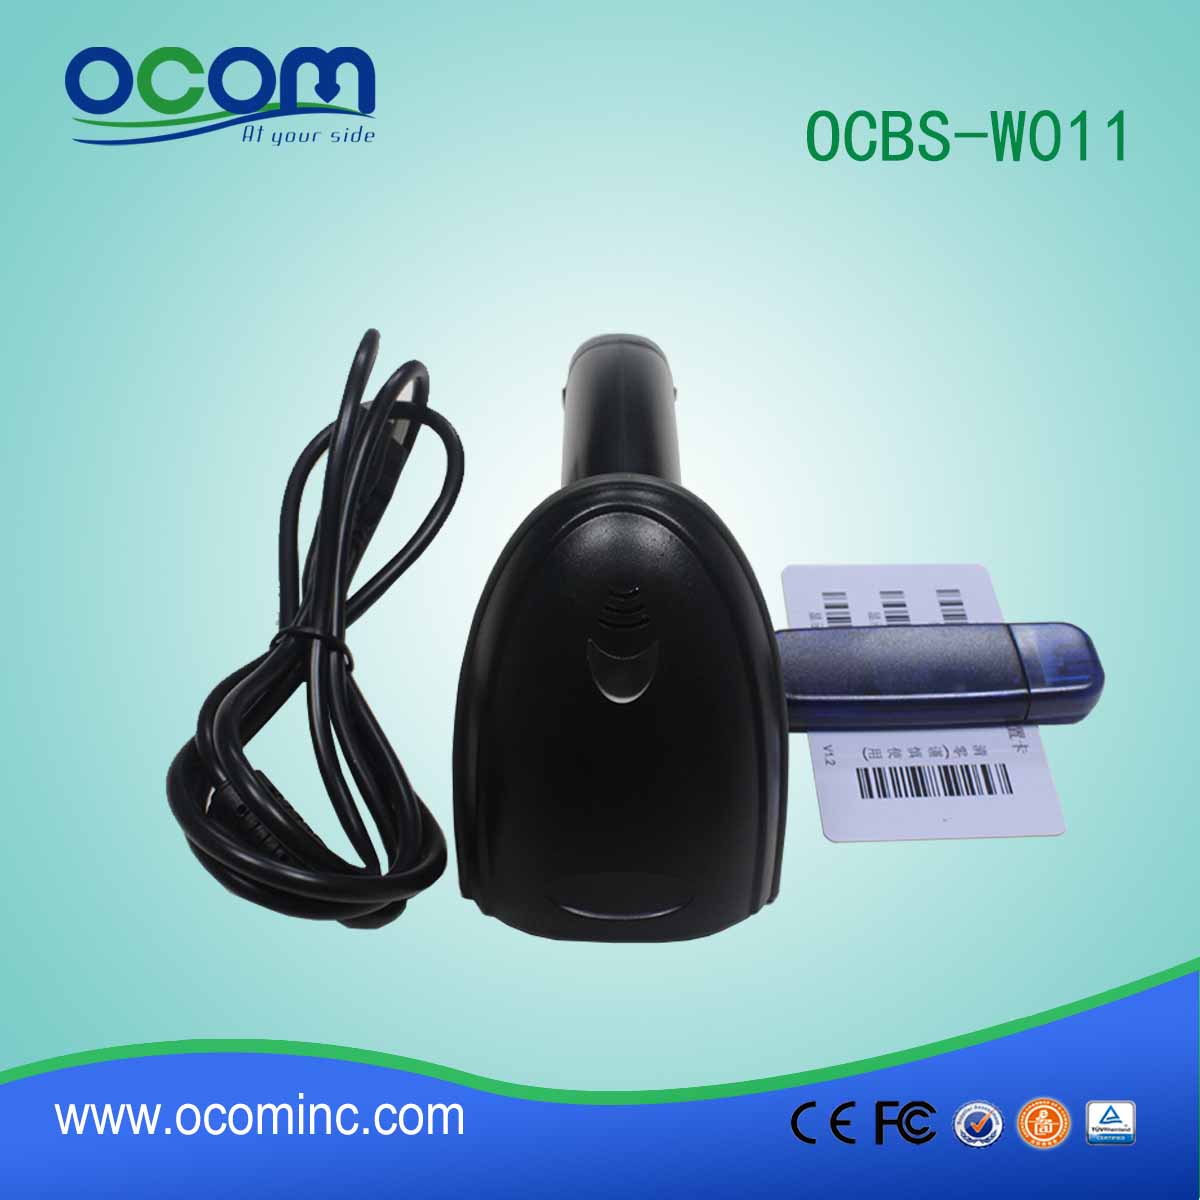 OCBs-W011 мини-433Mhz сканер штрих-кода беспроводной приемник с USB